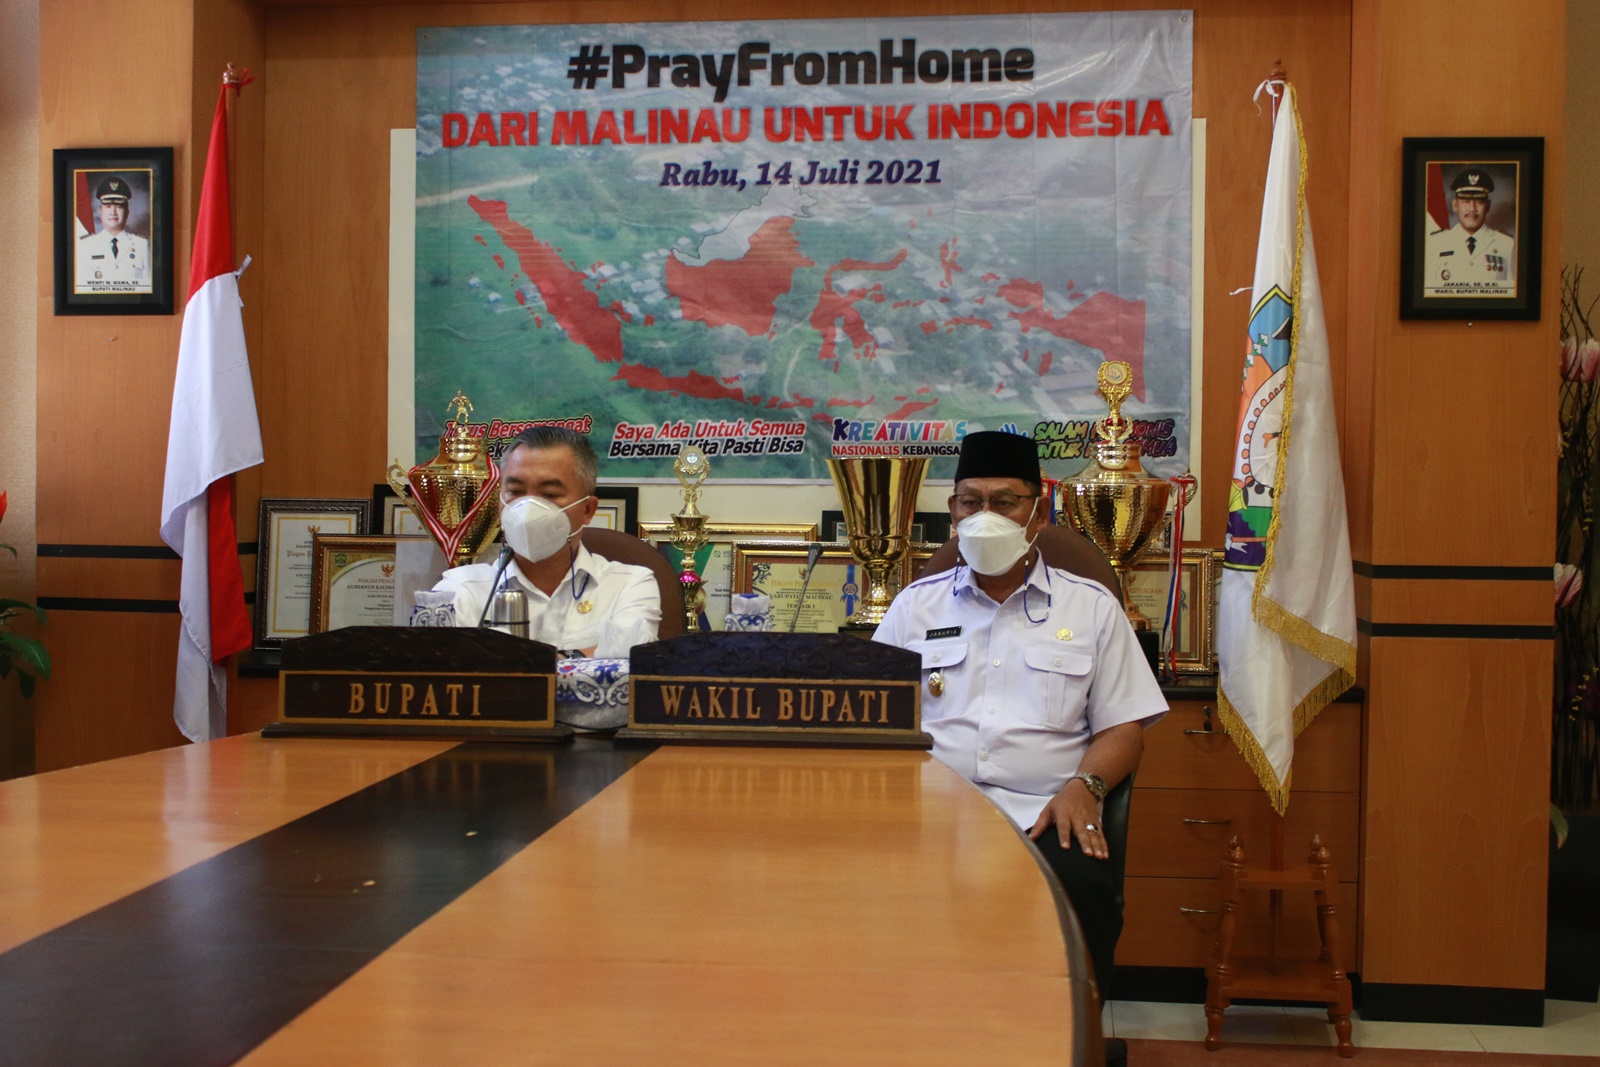 prayforhome-dari-malinau-untuk-indonesia